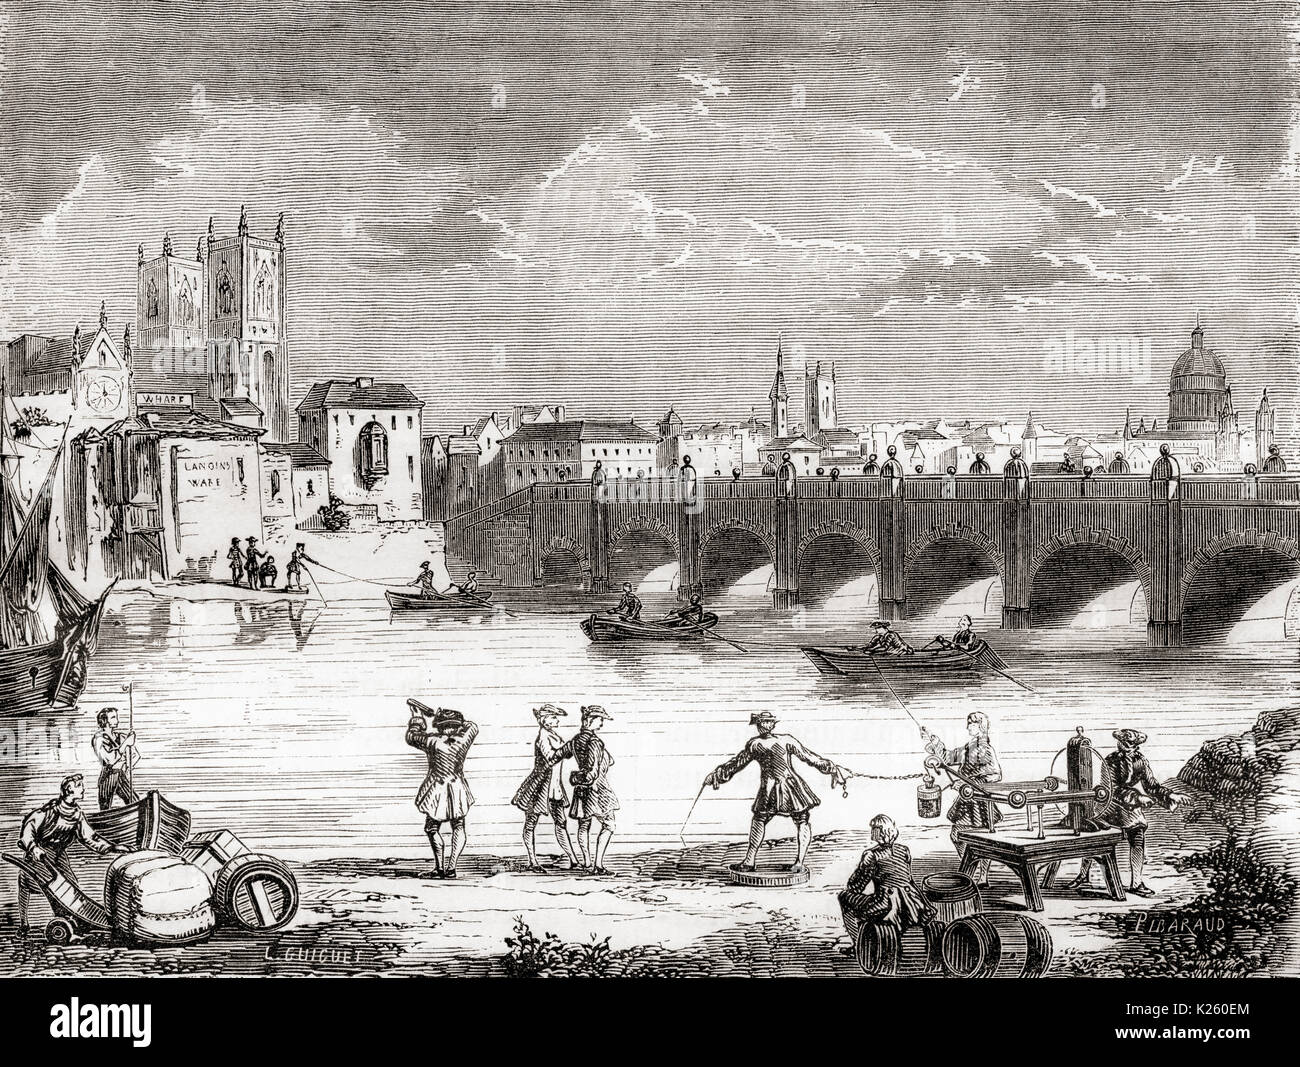 La Société royale d'une expérience réalisée en 1747 pour déterminer si le courant électrique peut être transporté d'un côté de la Tamise à l'autre à l'aide d'un Générateur électrostatique pour charger une jarre Leyden connecté à un fil suspendu au-dessus de la Tamise à Westminster Bridge. De chaque côté de la rivière un participant a tenu le fil dans une main tandis qu'une barre de fer était plongée dans la rivière avec l'autre. Lorsque le circuit fut terminée, l'acquitté de la bouteille de Leyde. Le choc a été ressenti par les participants des deux côtés de la rivière. De : Les merveilles de la science, publié en 1870. Banque D'Images